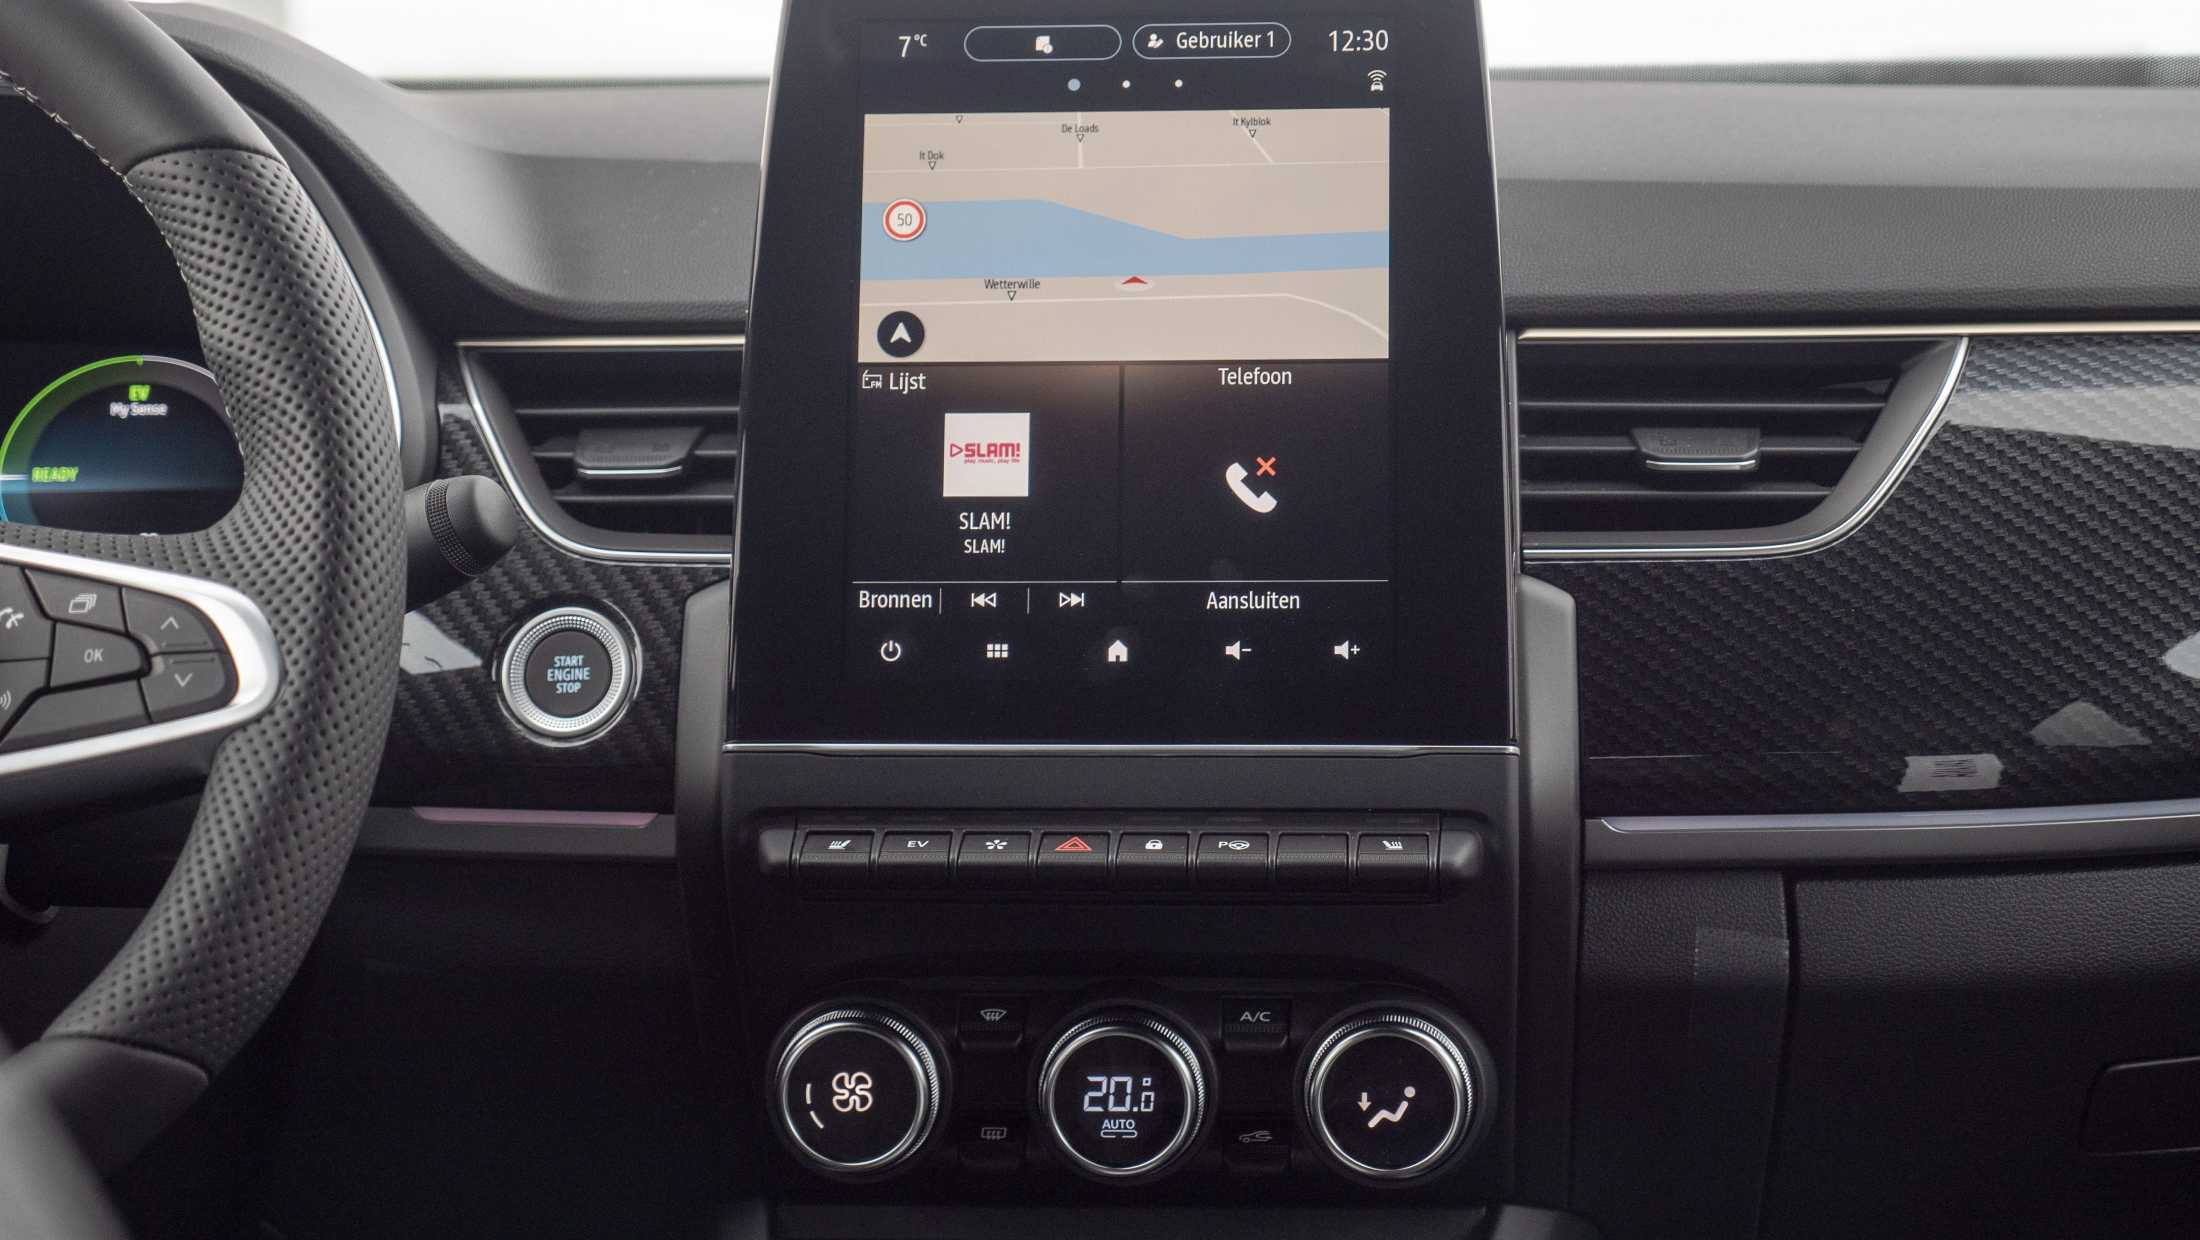 ABD Renault - Arkana - 9,3 inch touchscreen met EASYLINK multimedia en navigatie. Apple Carplay en Android auto